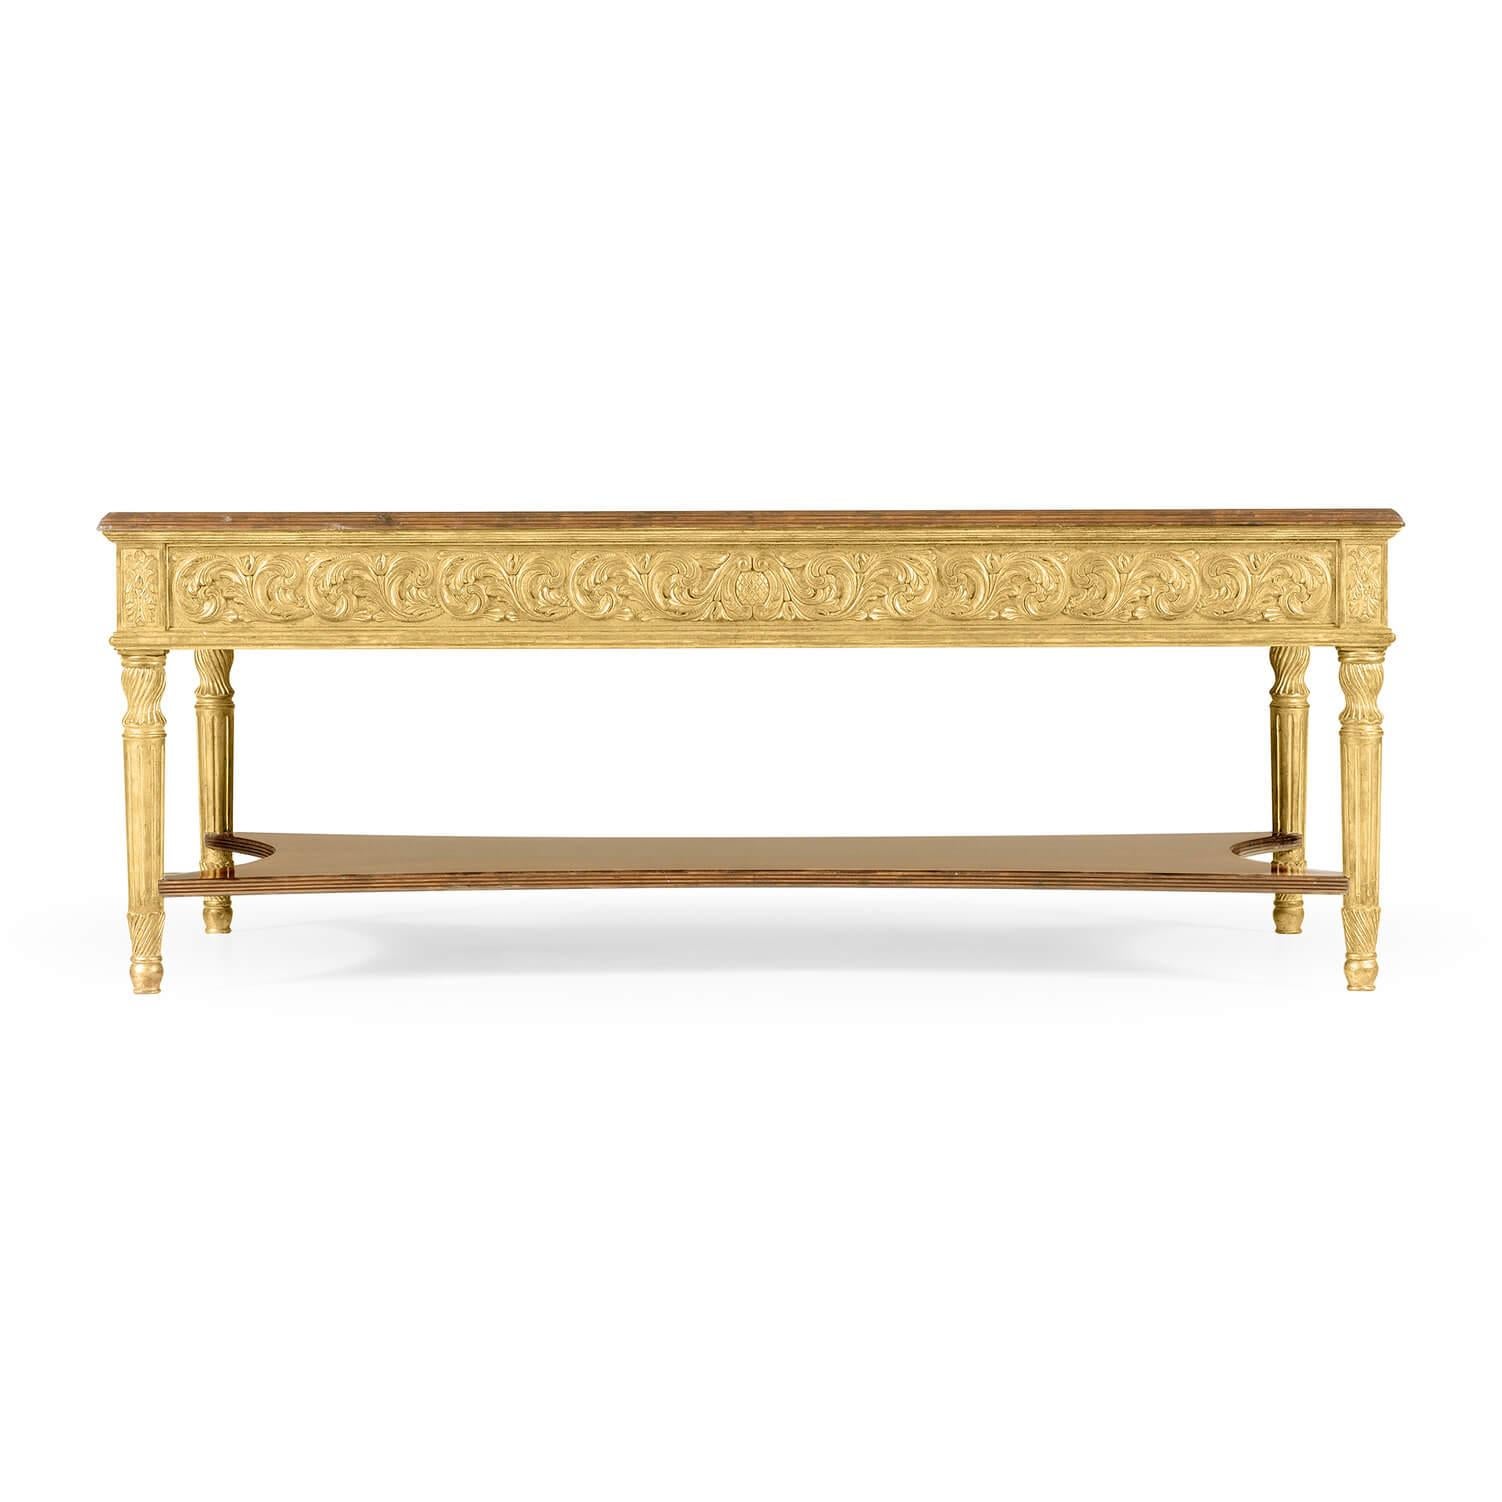 Une belle table basse rectangulaire de style George III, le plateau en bois de satin avec une fine marqueterie courante au-dessus d'une frise dorée de motifs floraux, un placage supplémentaire au niveau du dessous et des pieds cannelés